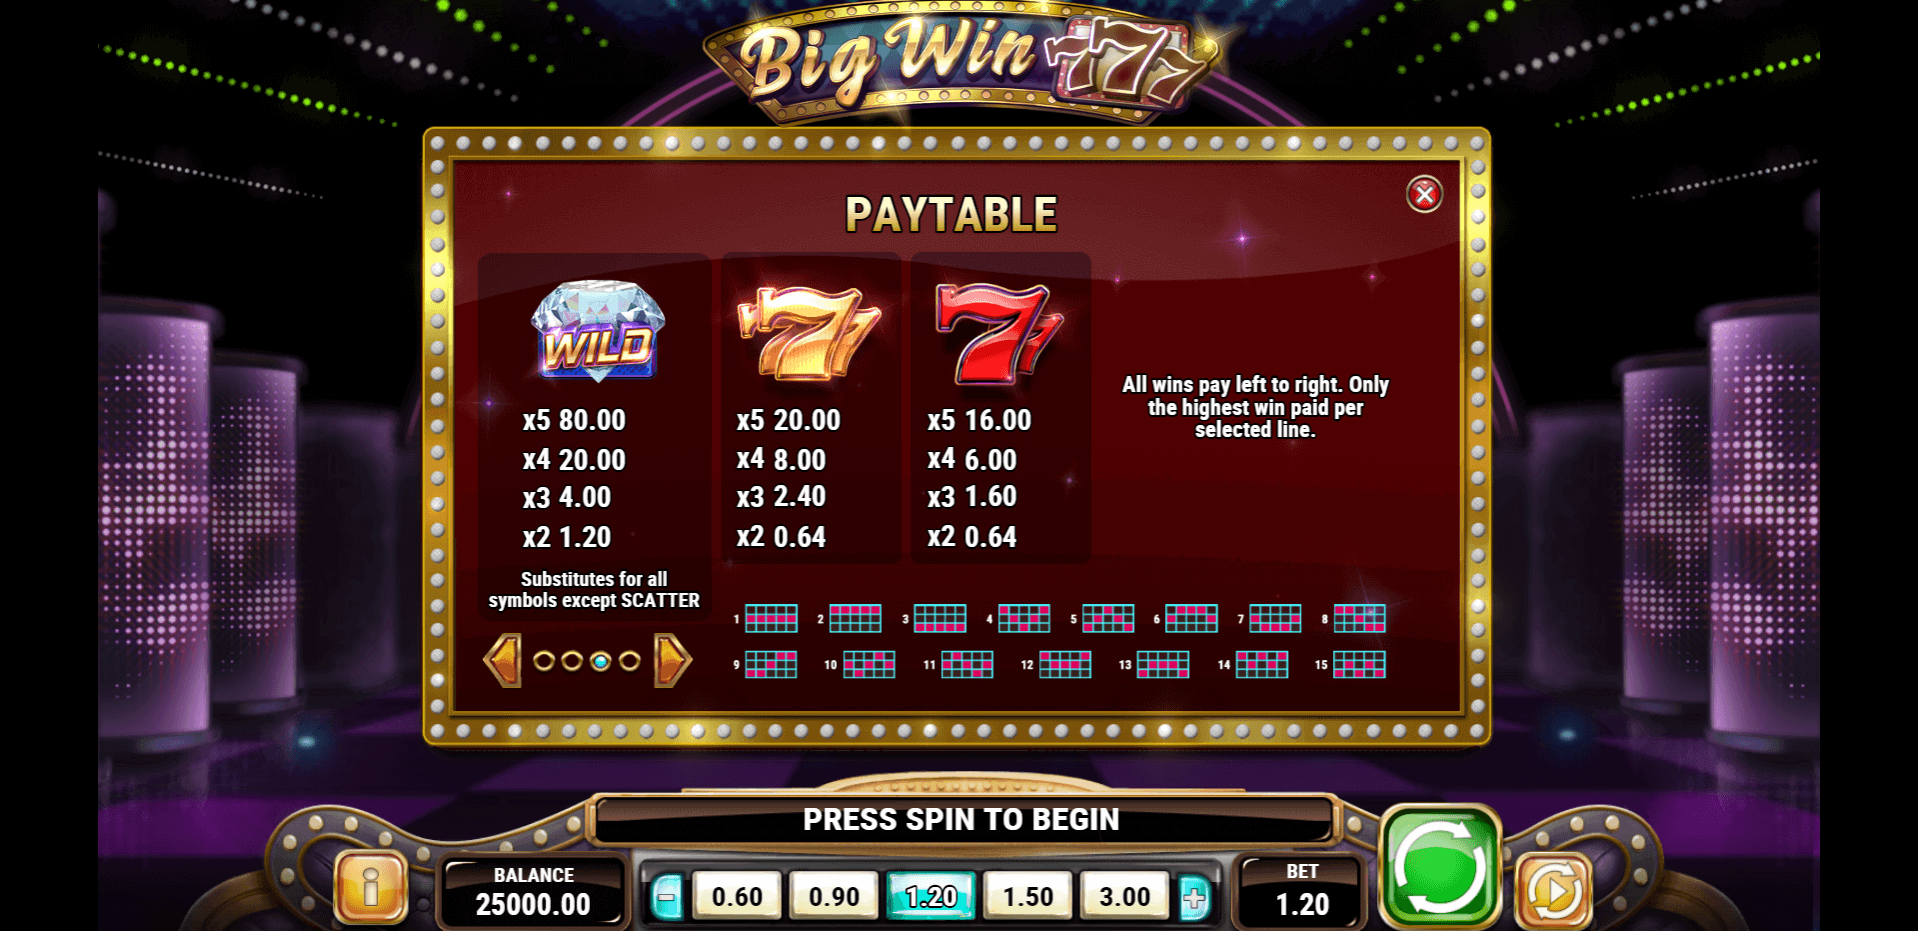 win big 21 online casino